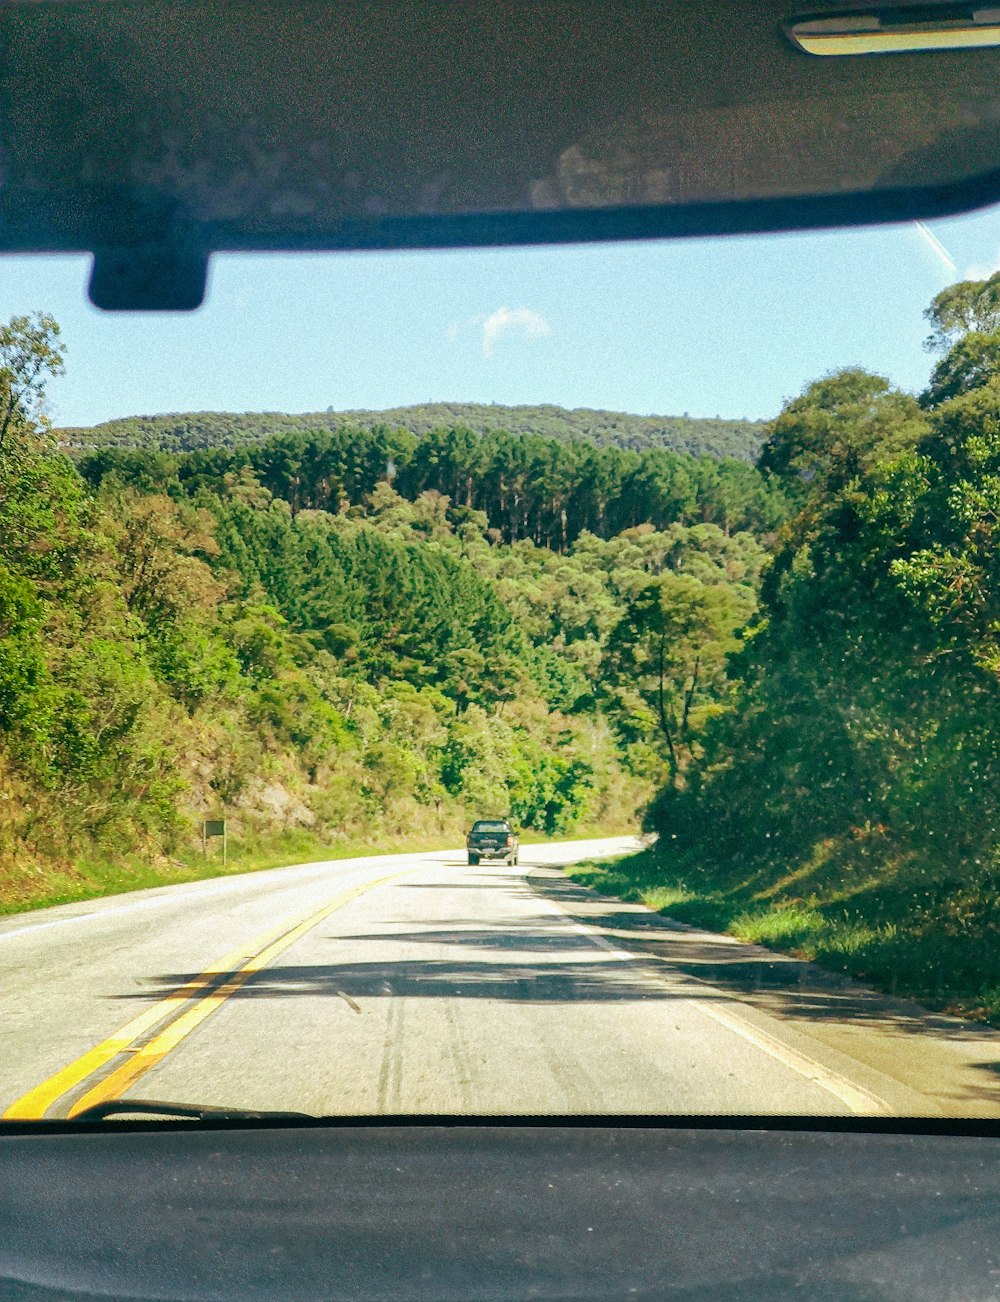 Une voiture roulant sur une route à côté d’une forêt verdoyante